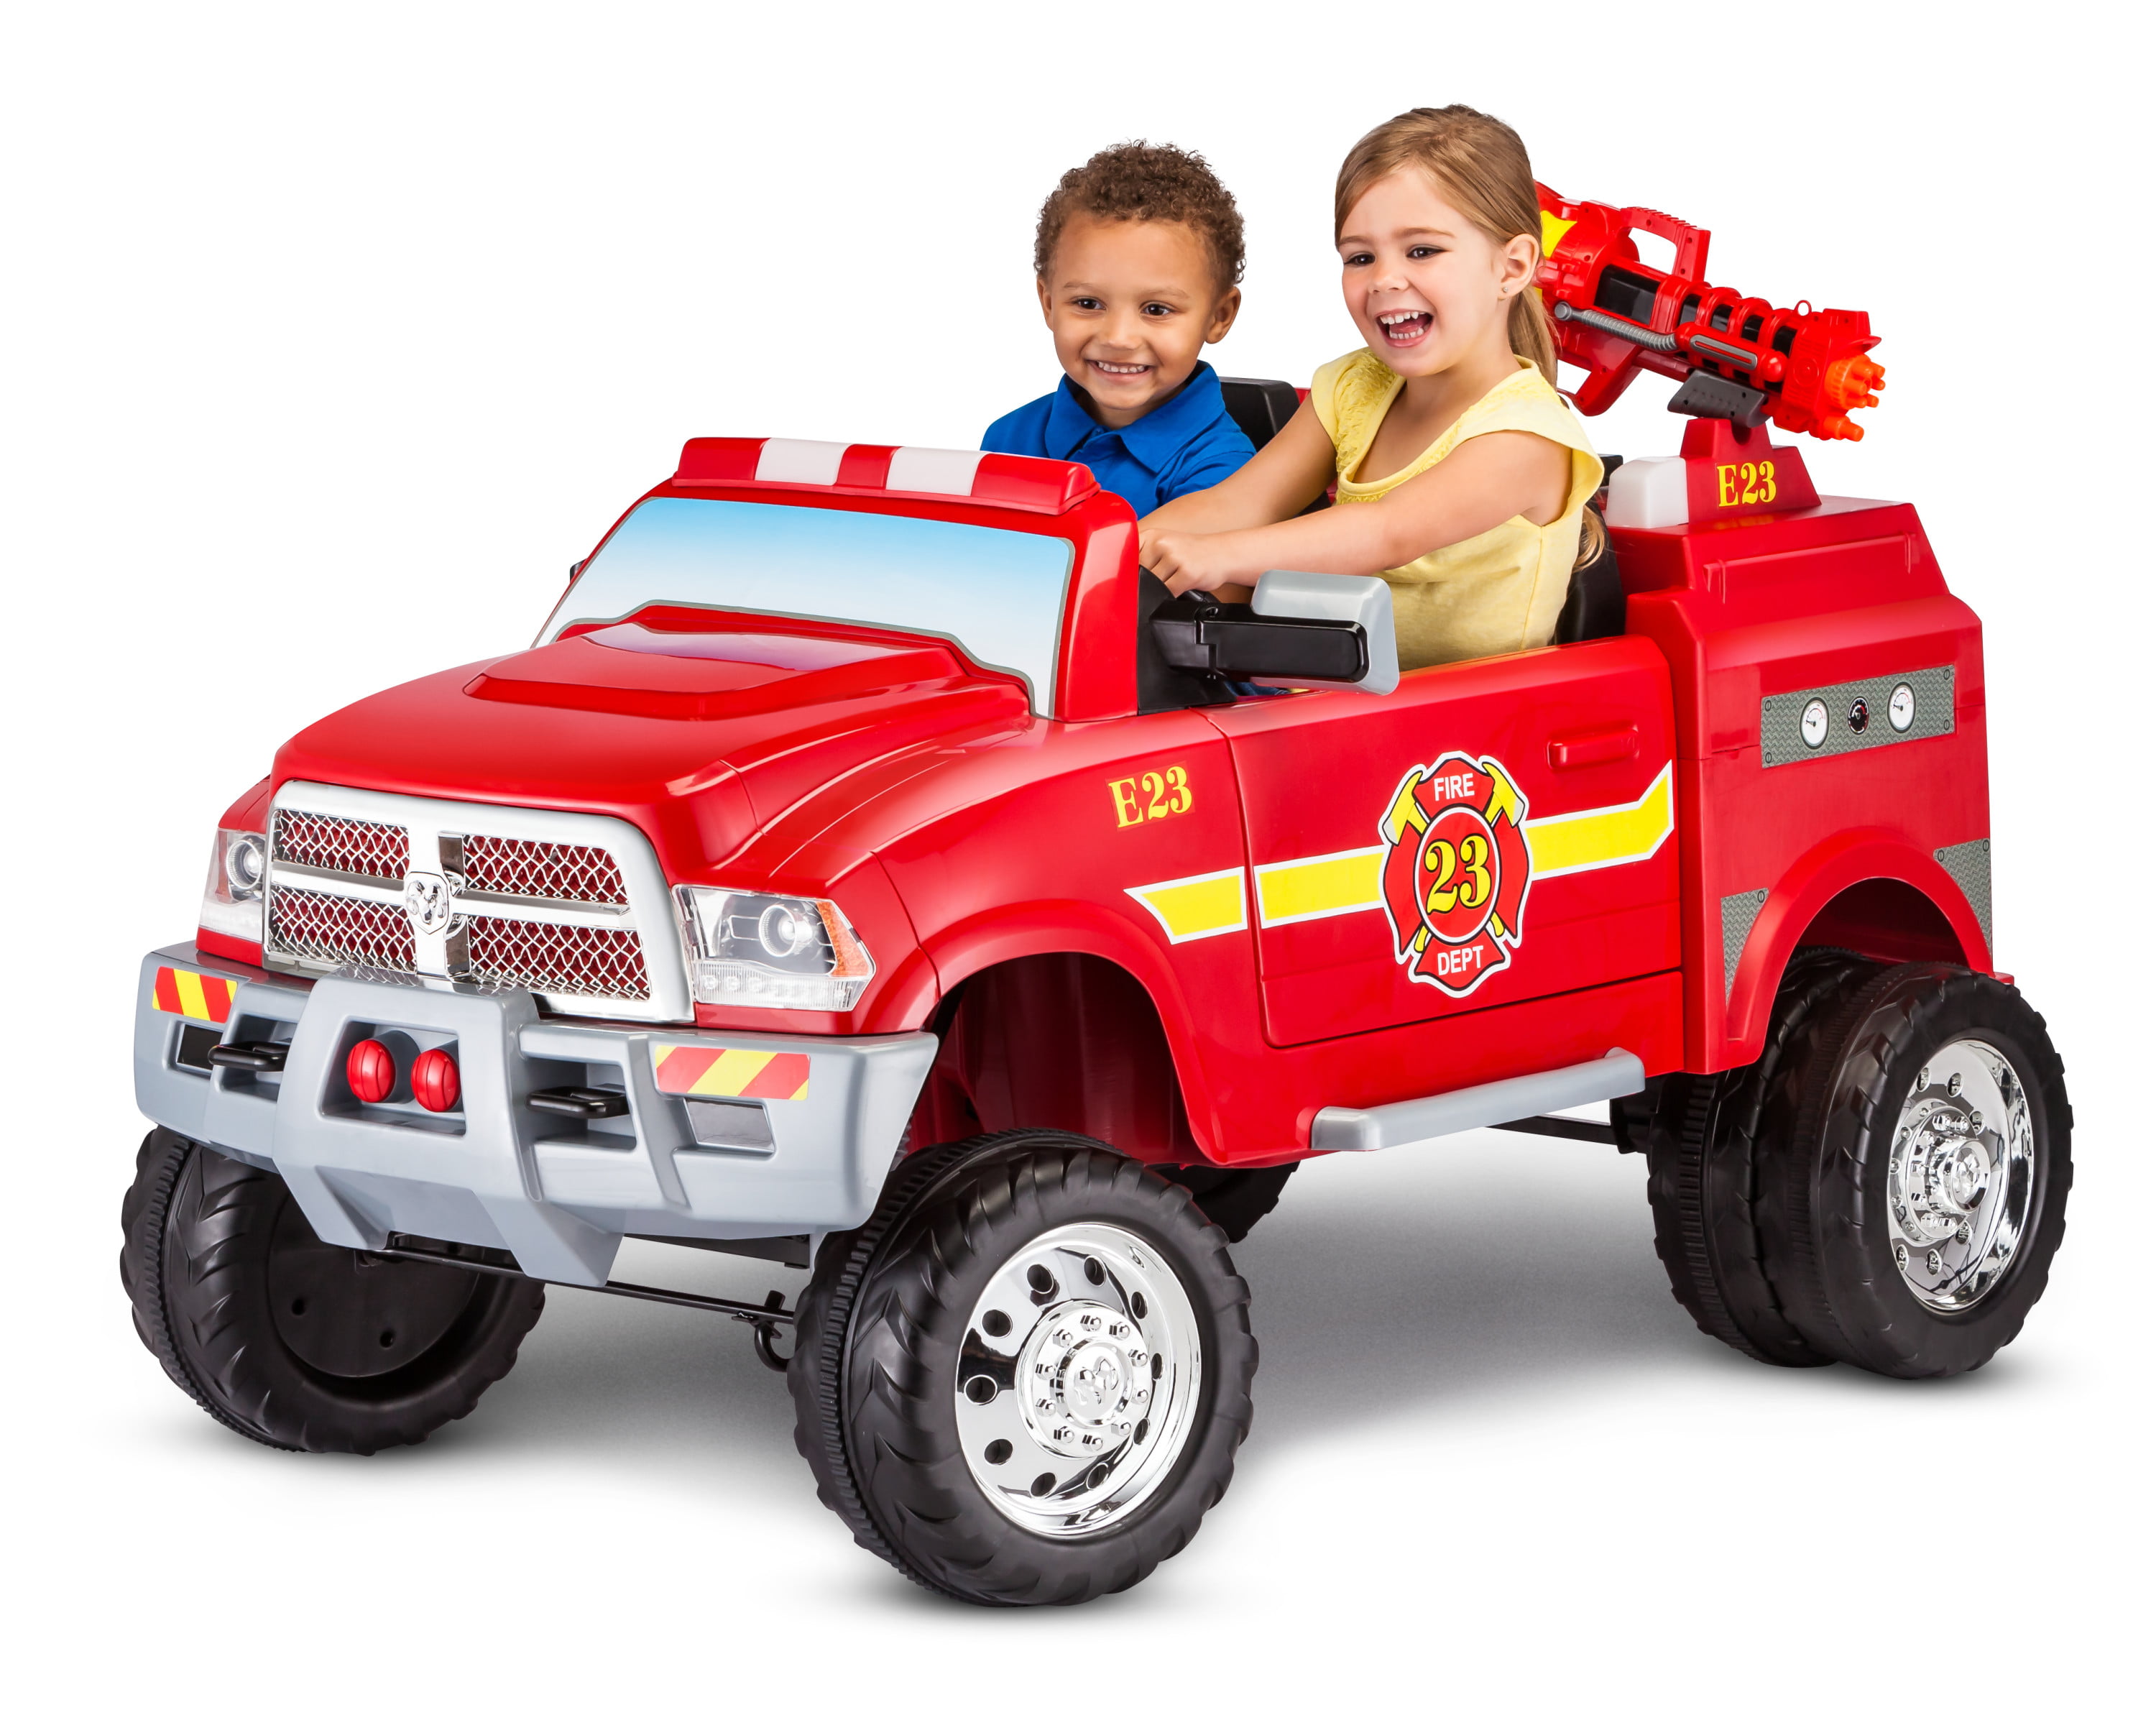 kids riding fire truck